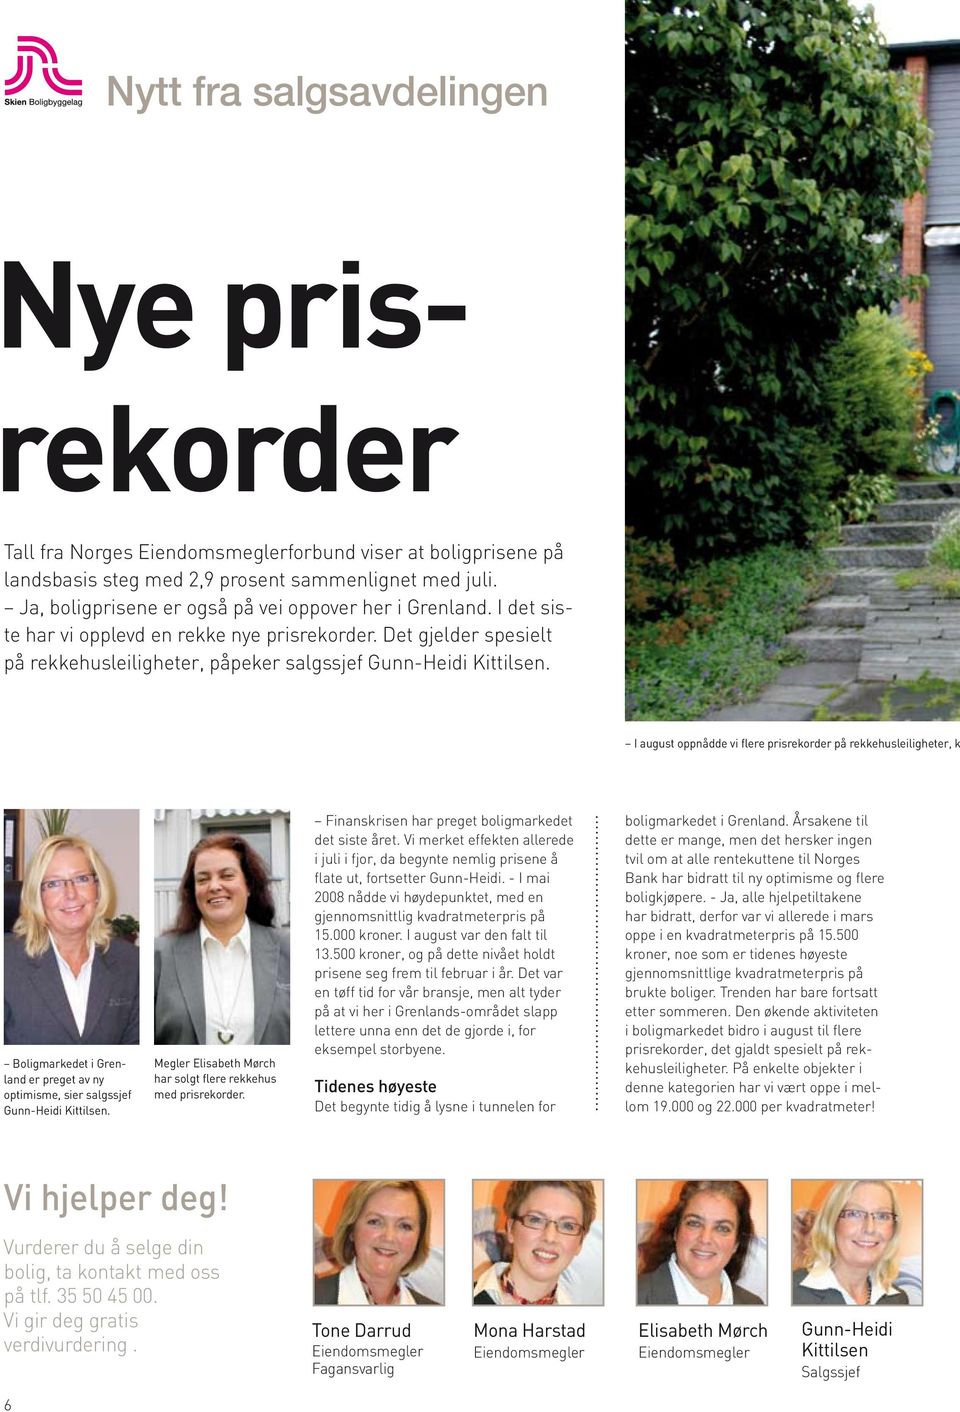 I august oppnådde vi flere prisrekorder på rekkehusleiligheter, k Boligmarkedet i Grenland er preget av ny optimisme, sier salgssjef Gunn-Heidi Kittilsen.